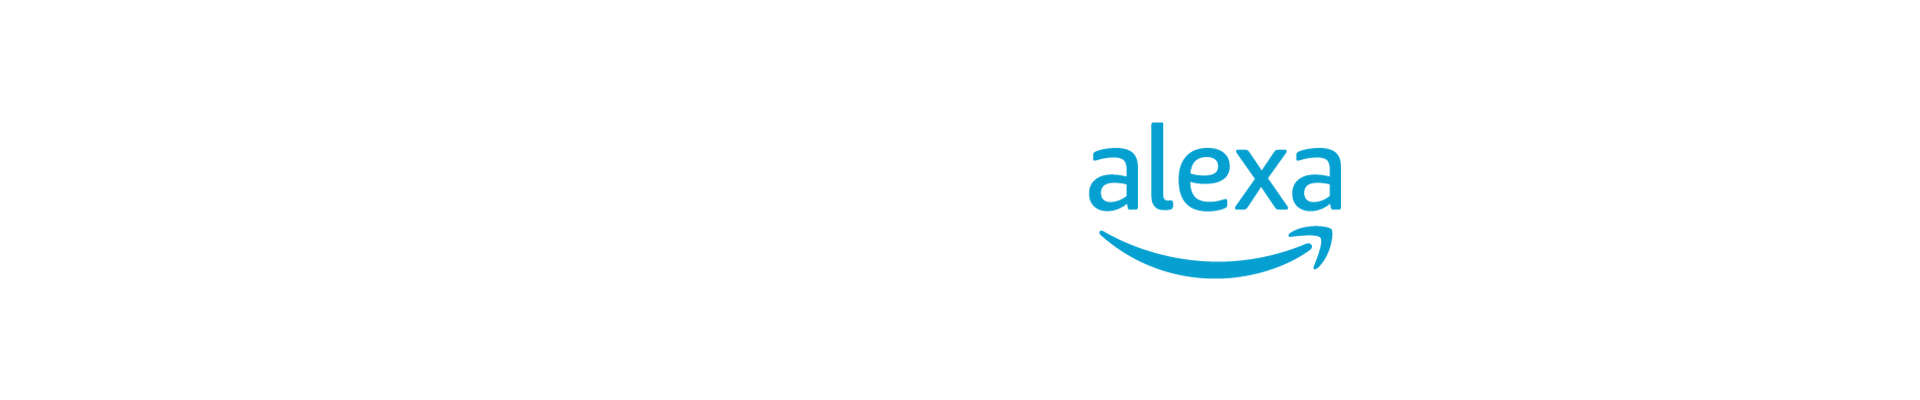 アルガスサイバーセキュリティ、Amazon Alexaを車両システムに統合する際の公認セキュリティラボに認定